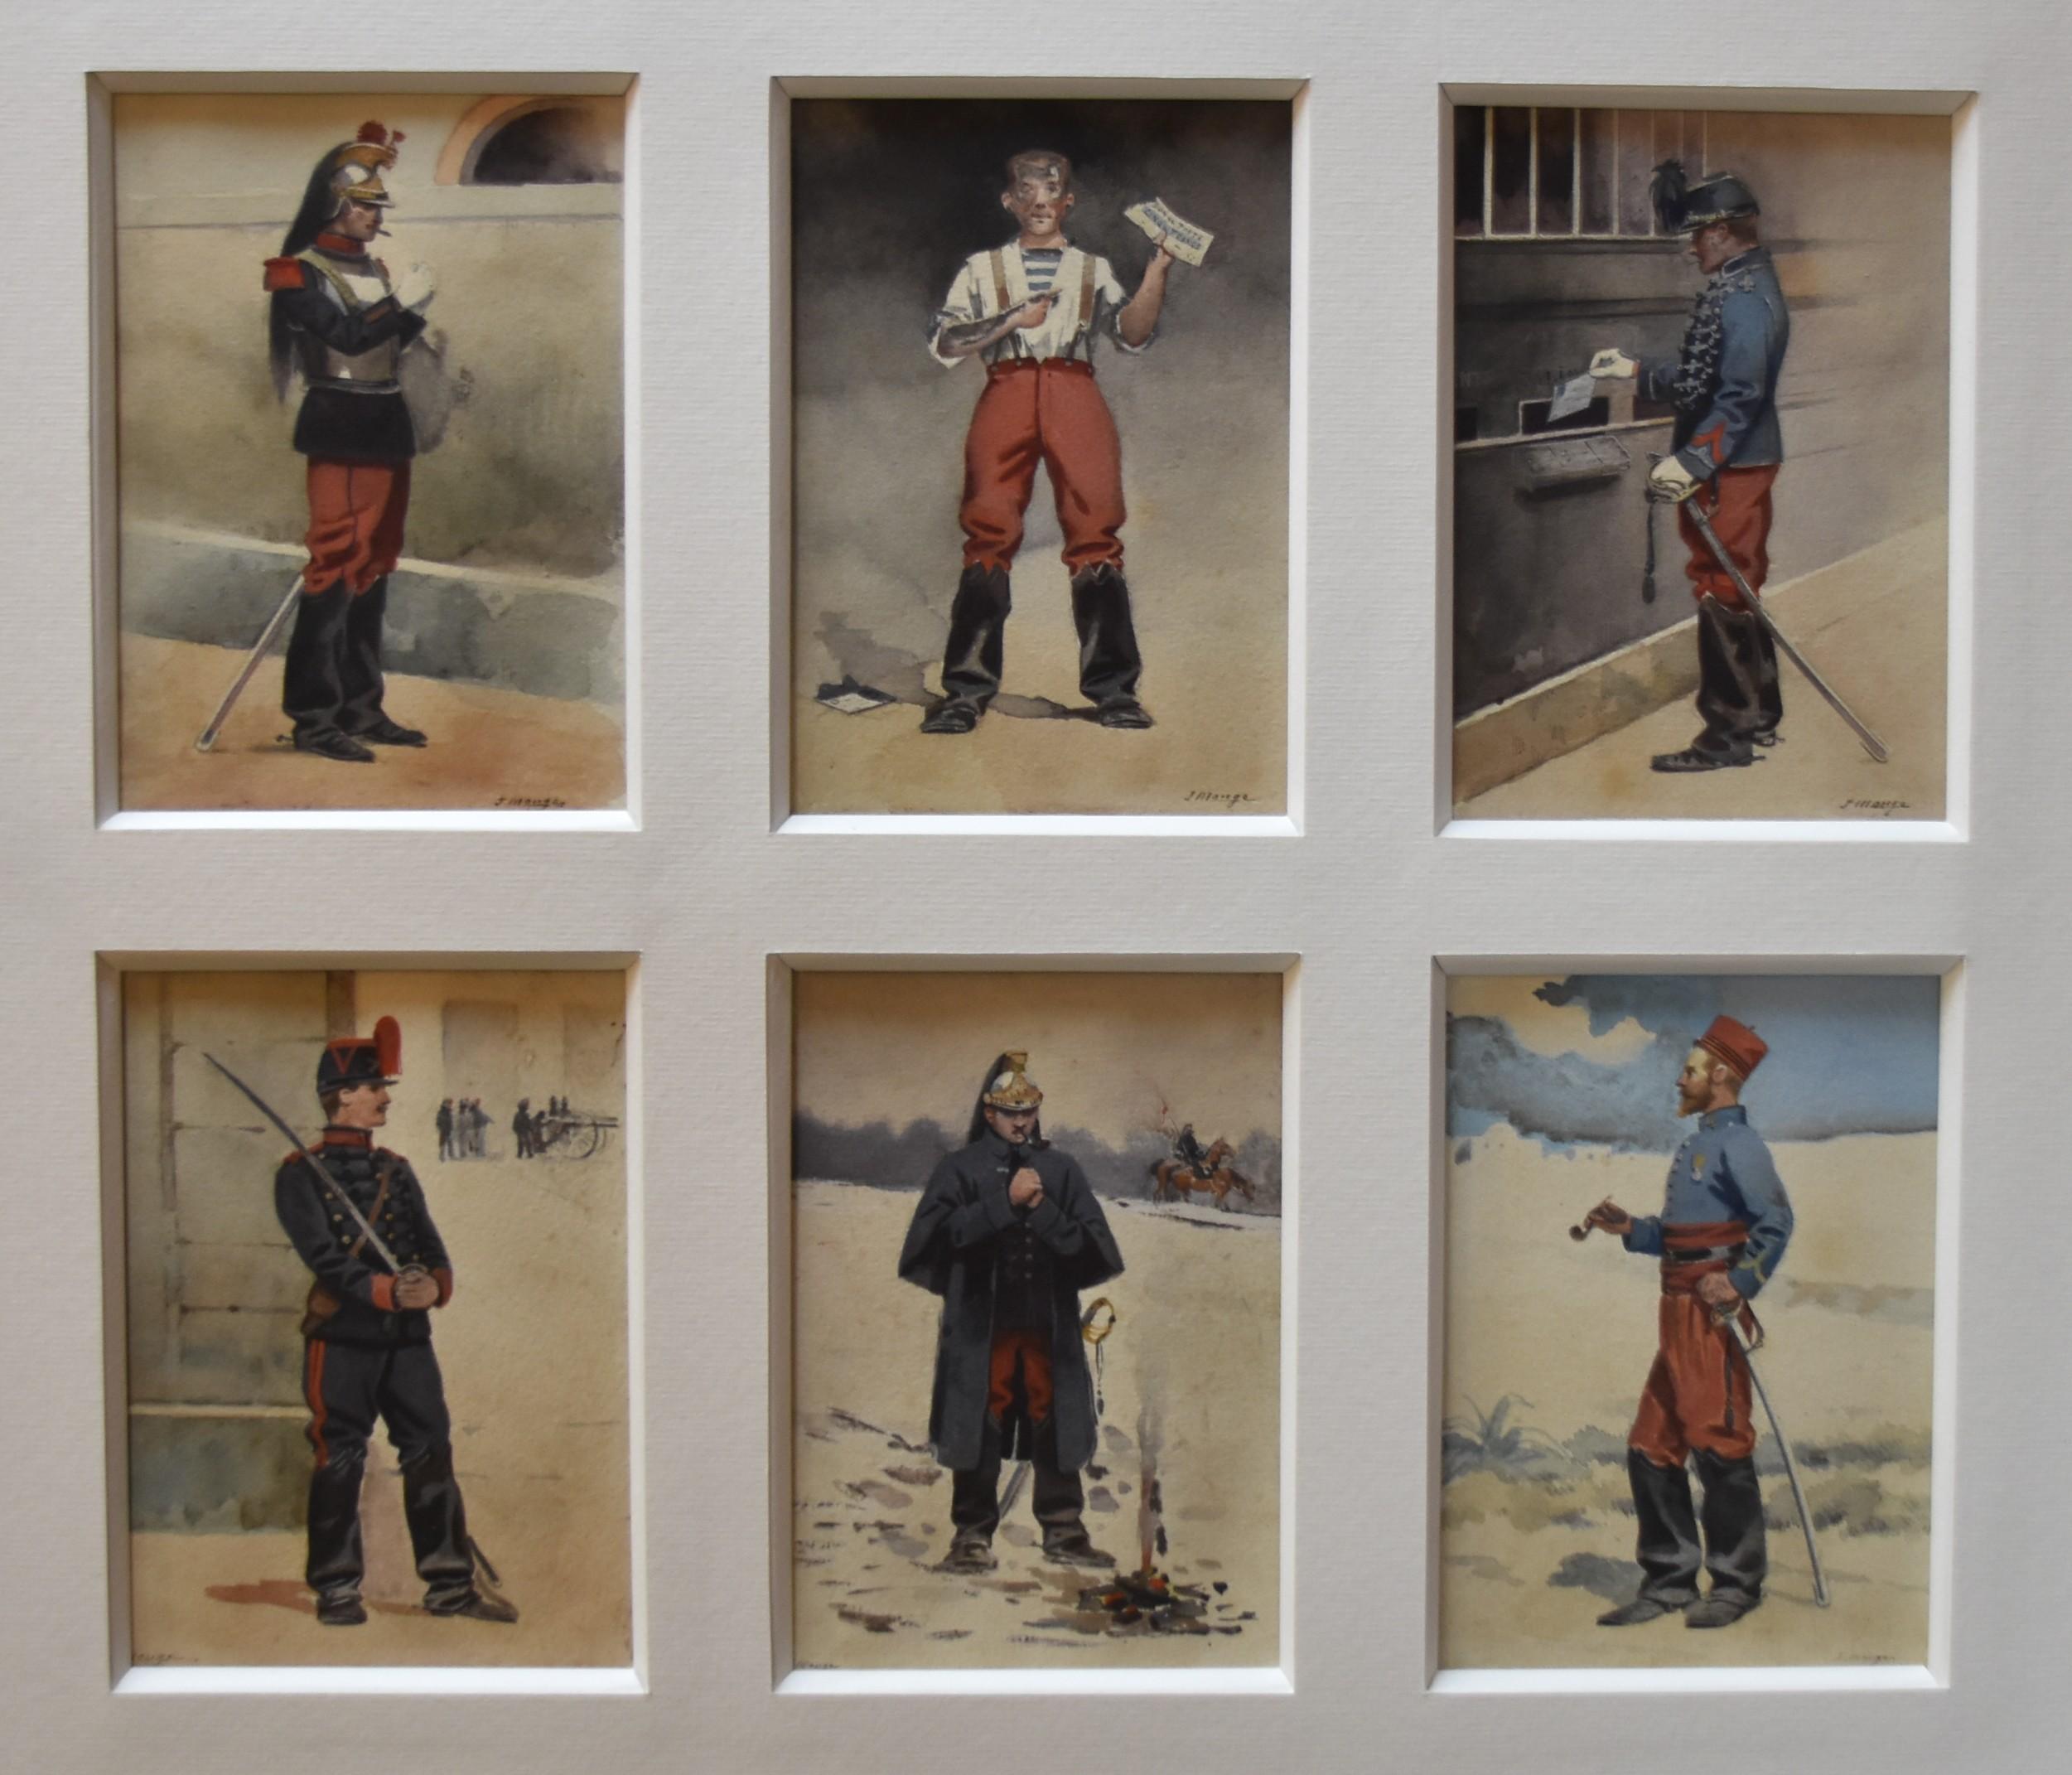 Jules Monge (1855-1934)
Französische Soldaten, sechs verschiedene Aquarelle in einem Passepartout
Jedes Exemplar signiert (4 unten rechts, 2 unten links)
Jedes Stück 9,5 x 14 cm
Gesamtgröße mit Passepartout: 43 x 48 cm
Es ist eine moderne Halterung